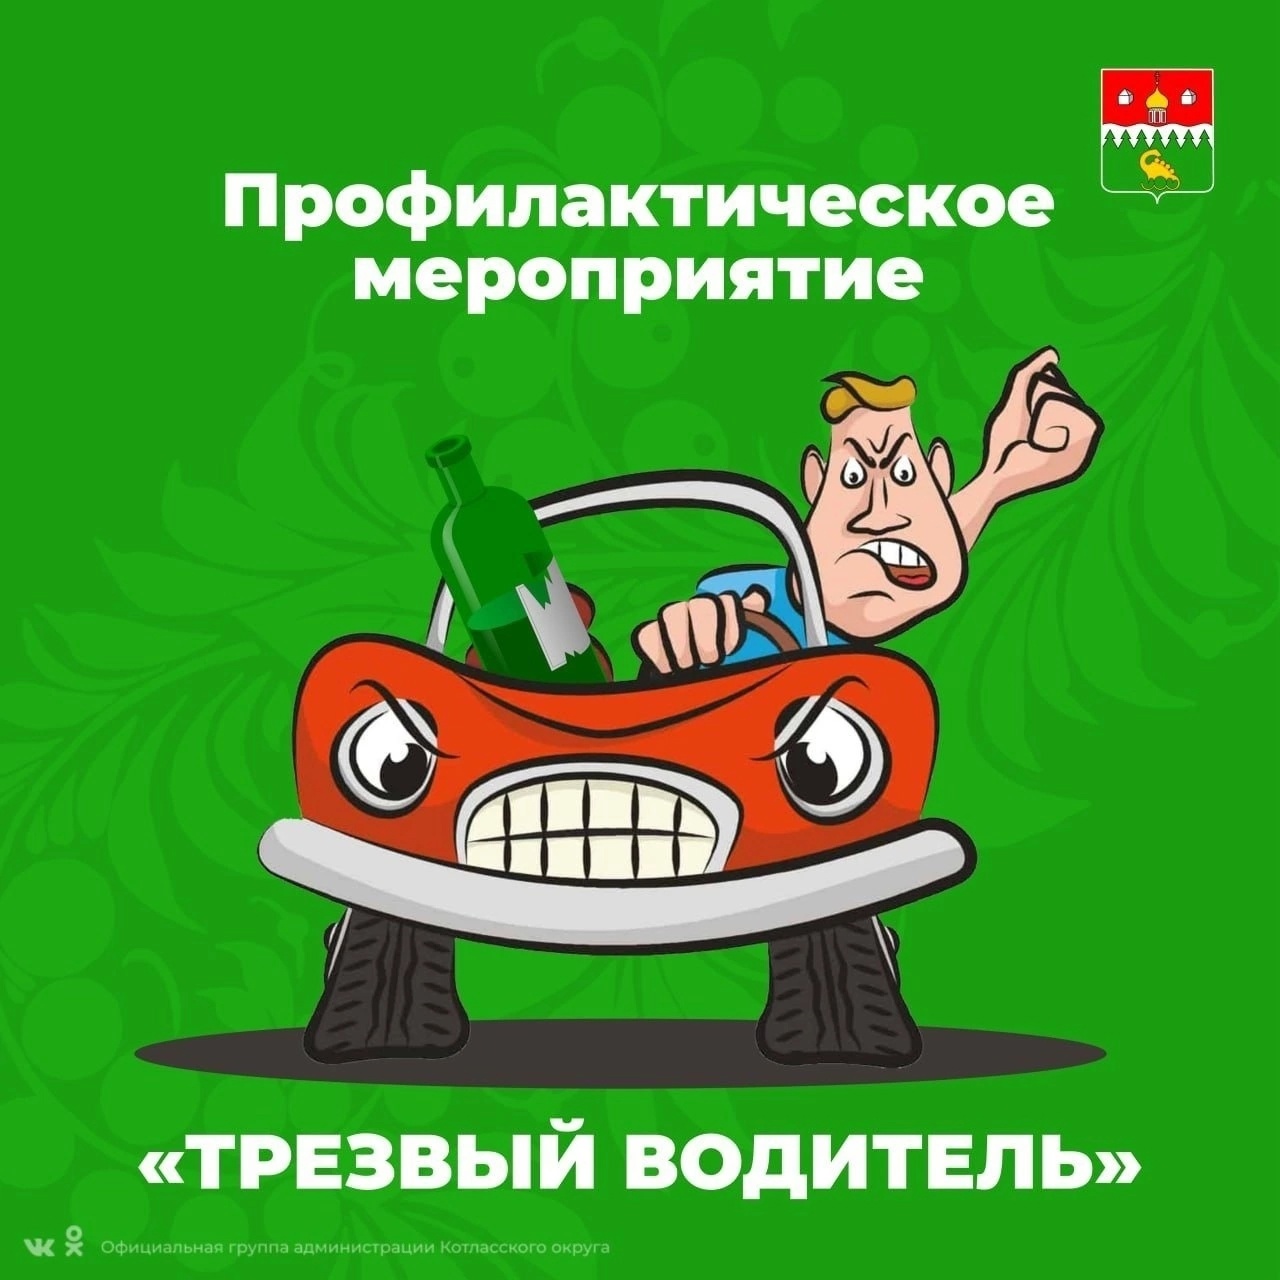 С 27 апреля по 01 мая на территории Котласа, Коряжмы и Котласского округа пройдет профилактическое мероприятие «Трезвый водитель».